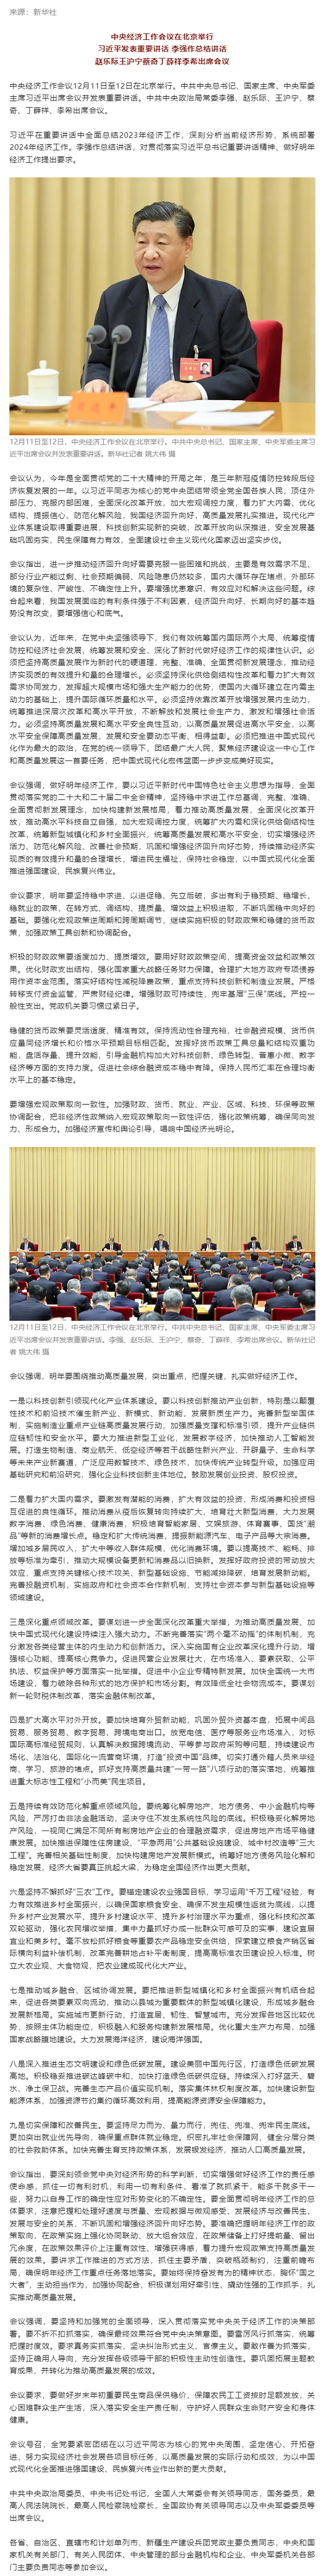 中央经济工作会议在北京举行 习近平出席会议并发表重要讲话.png